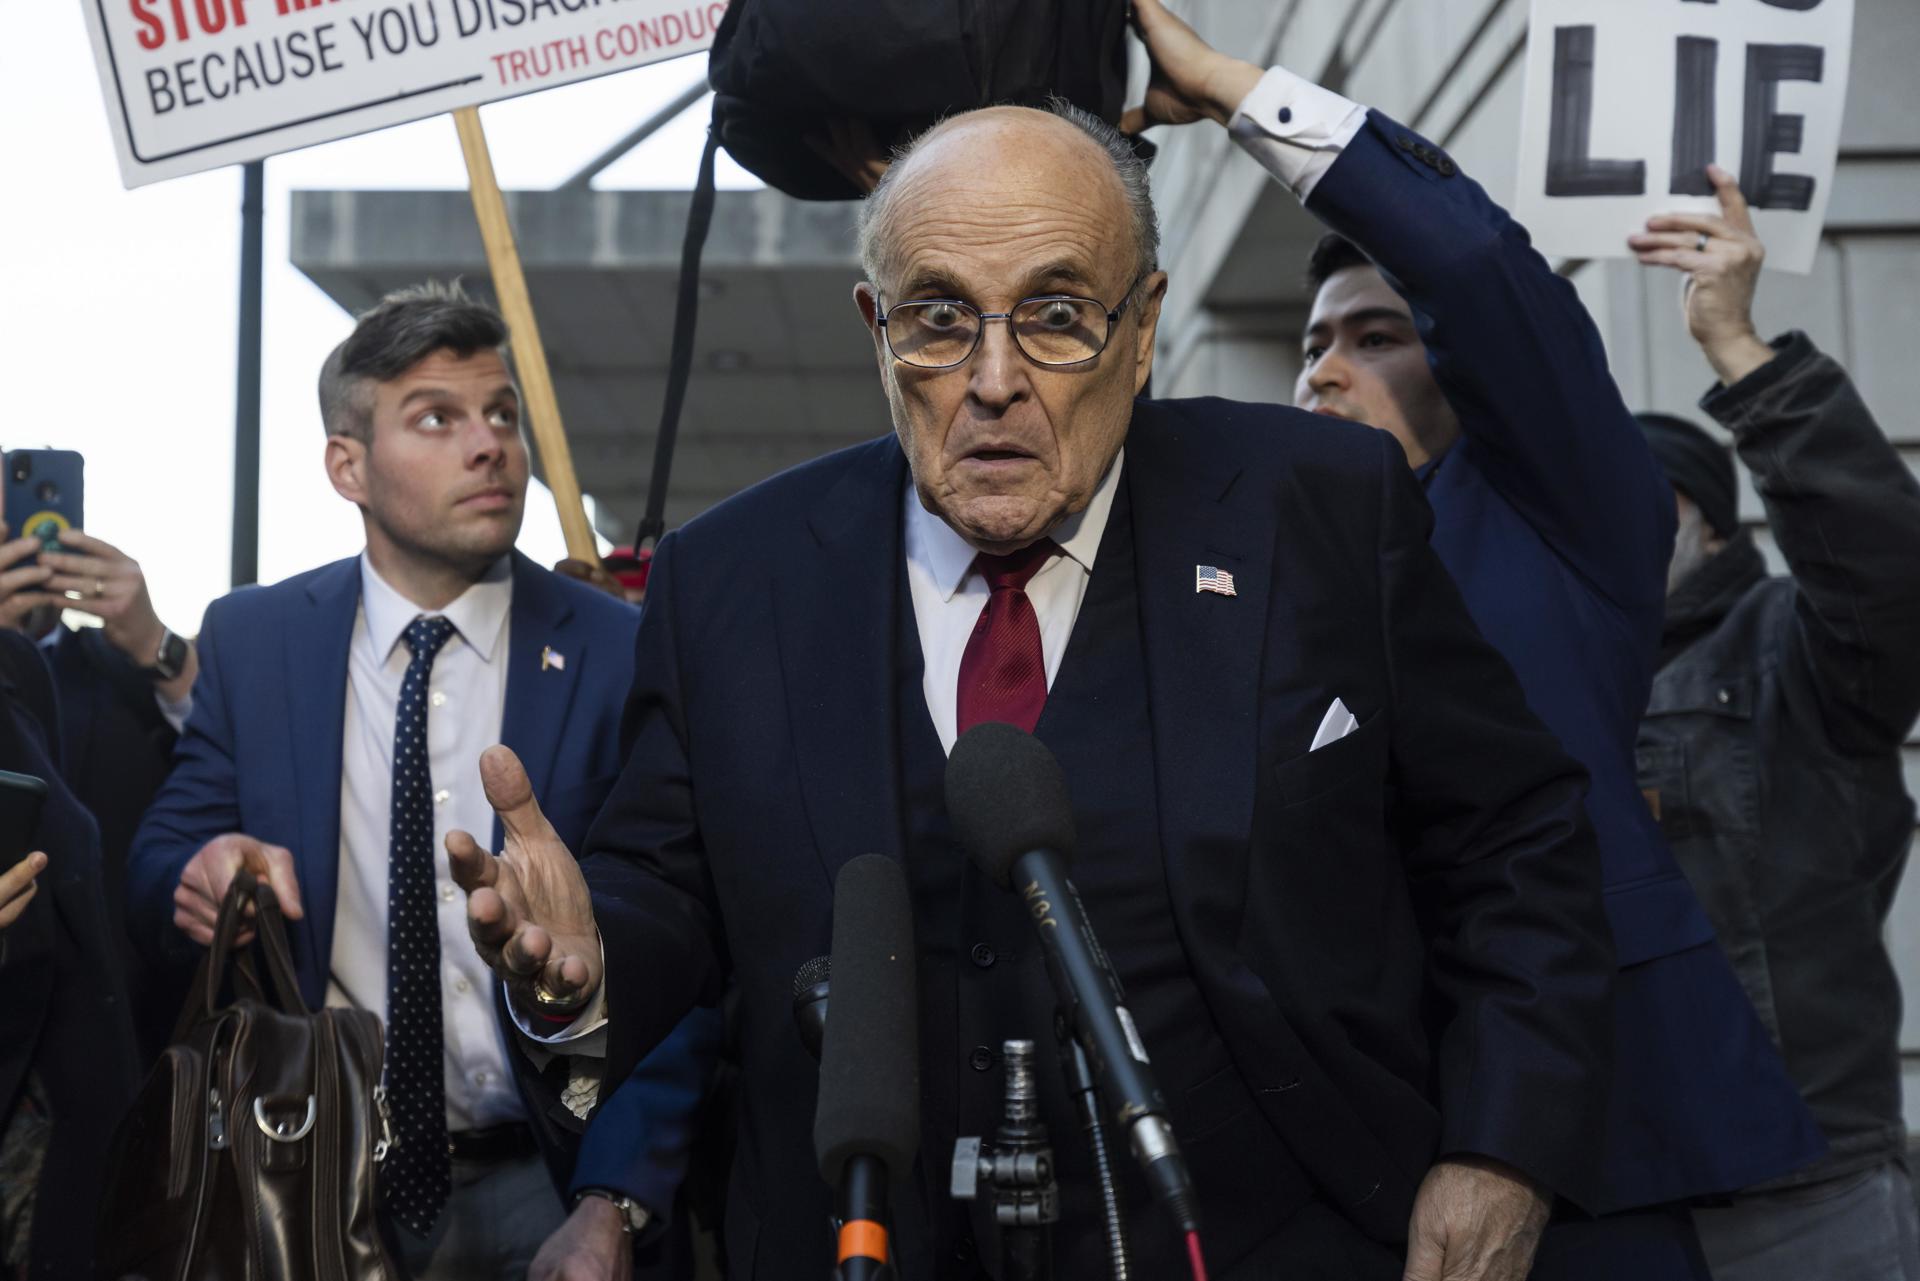 Fotografía de archivo en donde se ve a Rudy Giuliani exalcalde de Nueva York y exabogado del expresidente de Estados Unidos Donald Trump. EFE/Jim Lo Scalzo